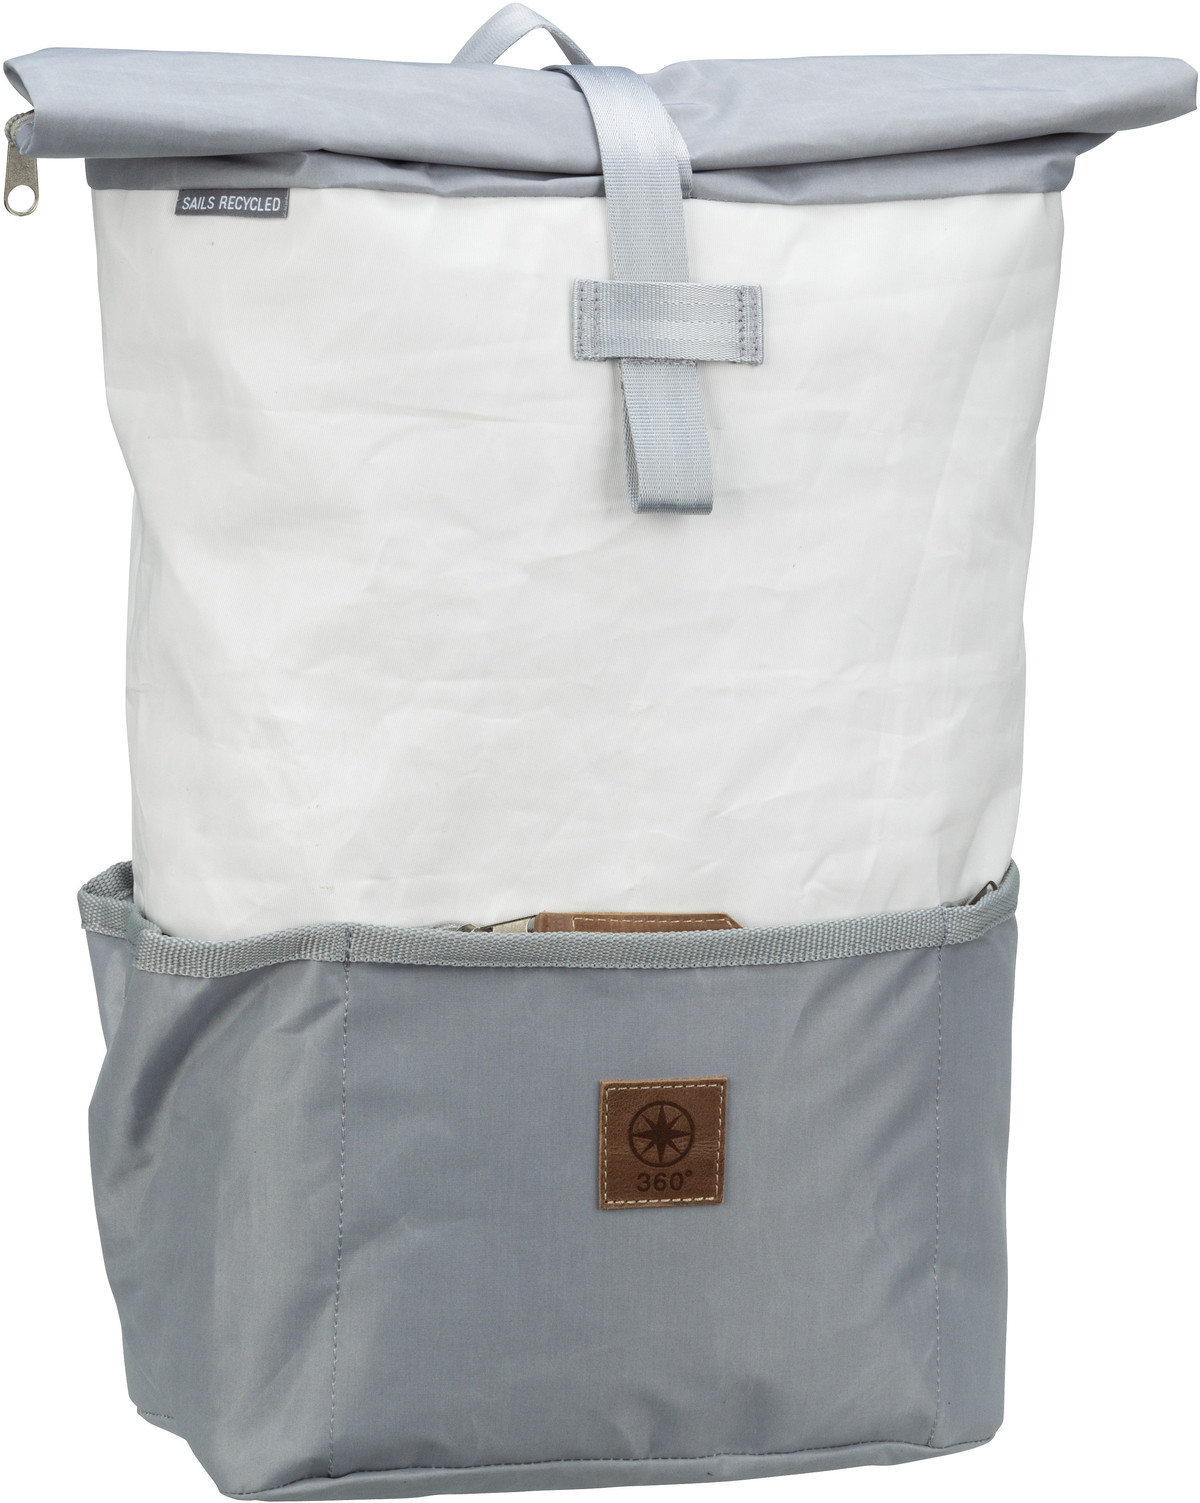 360Grad Lotse Rucksack  in Weiß/Grau (16 Liter), Rucksack / Backpack